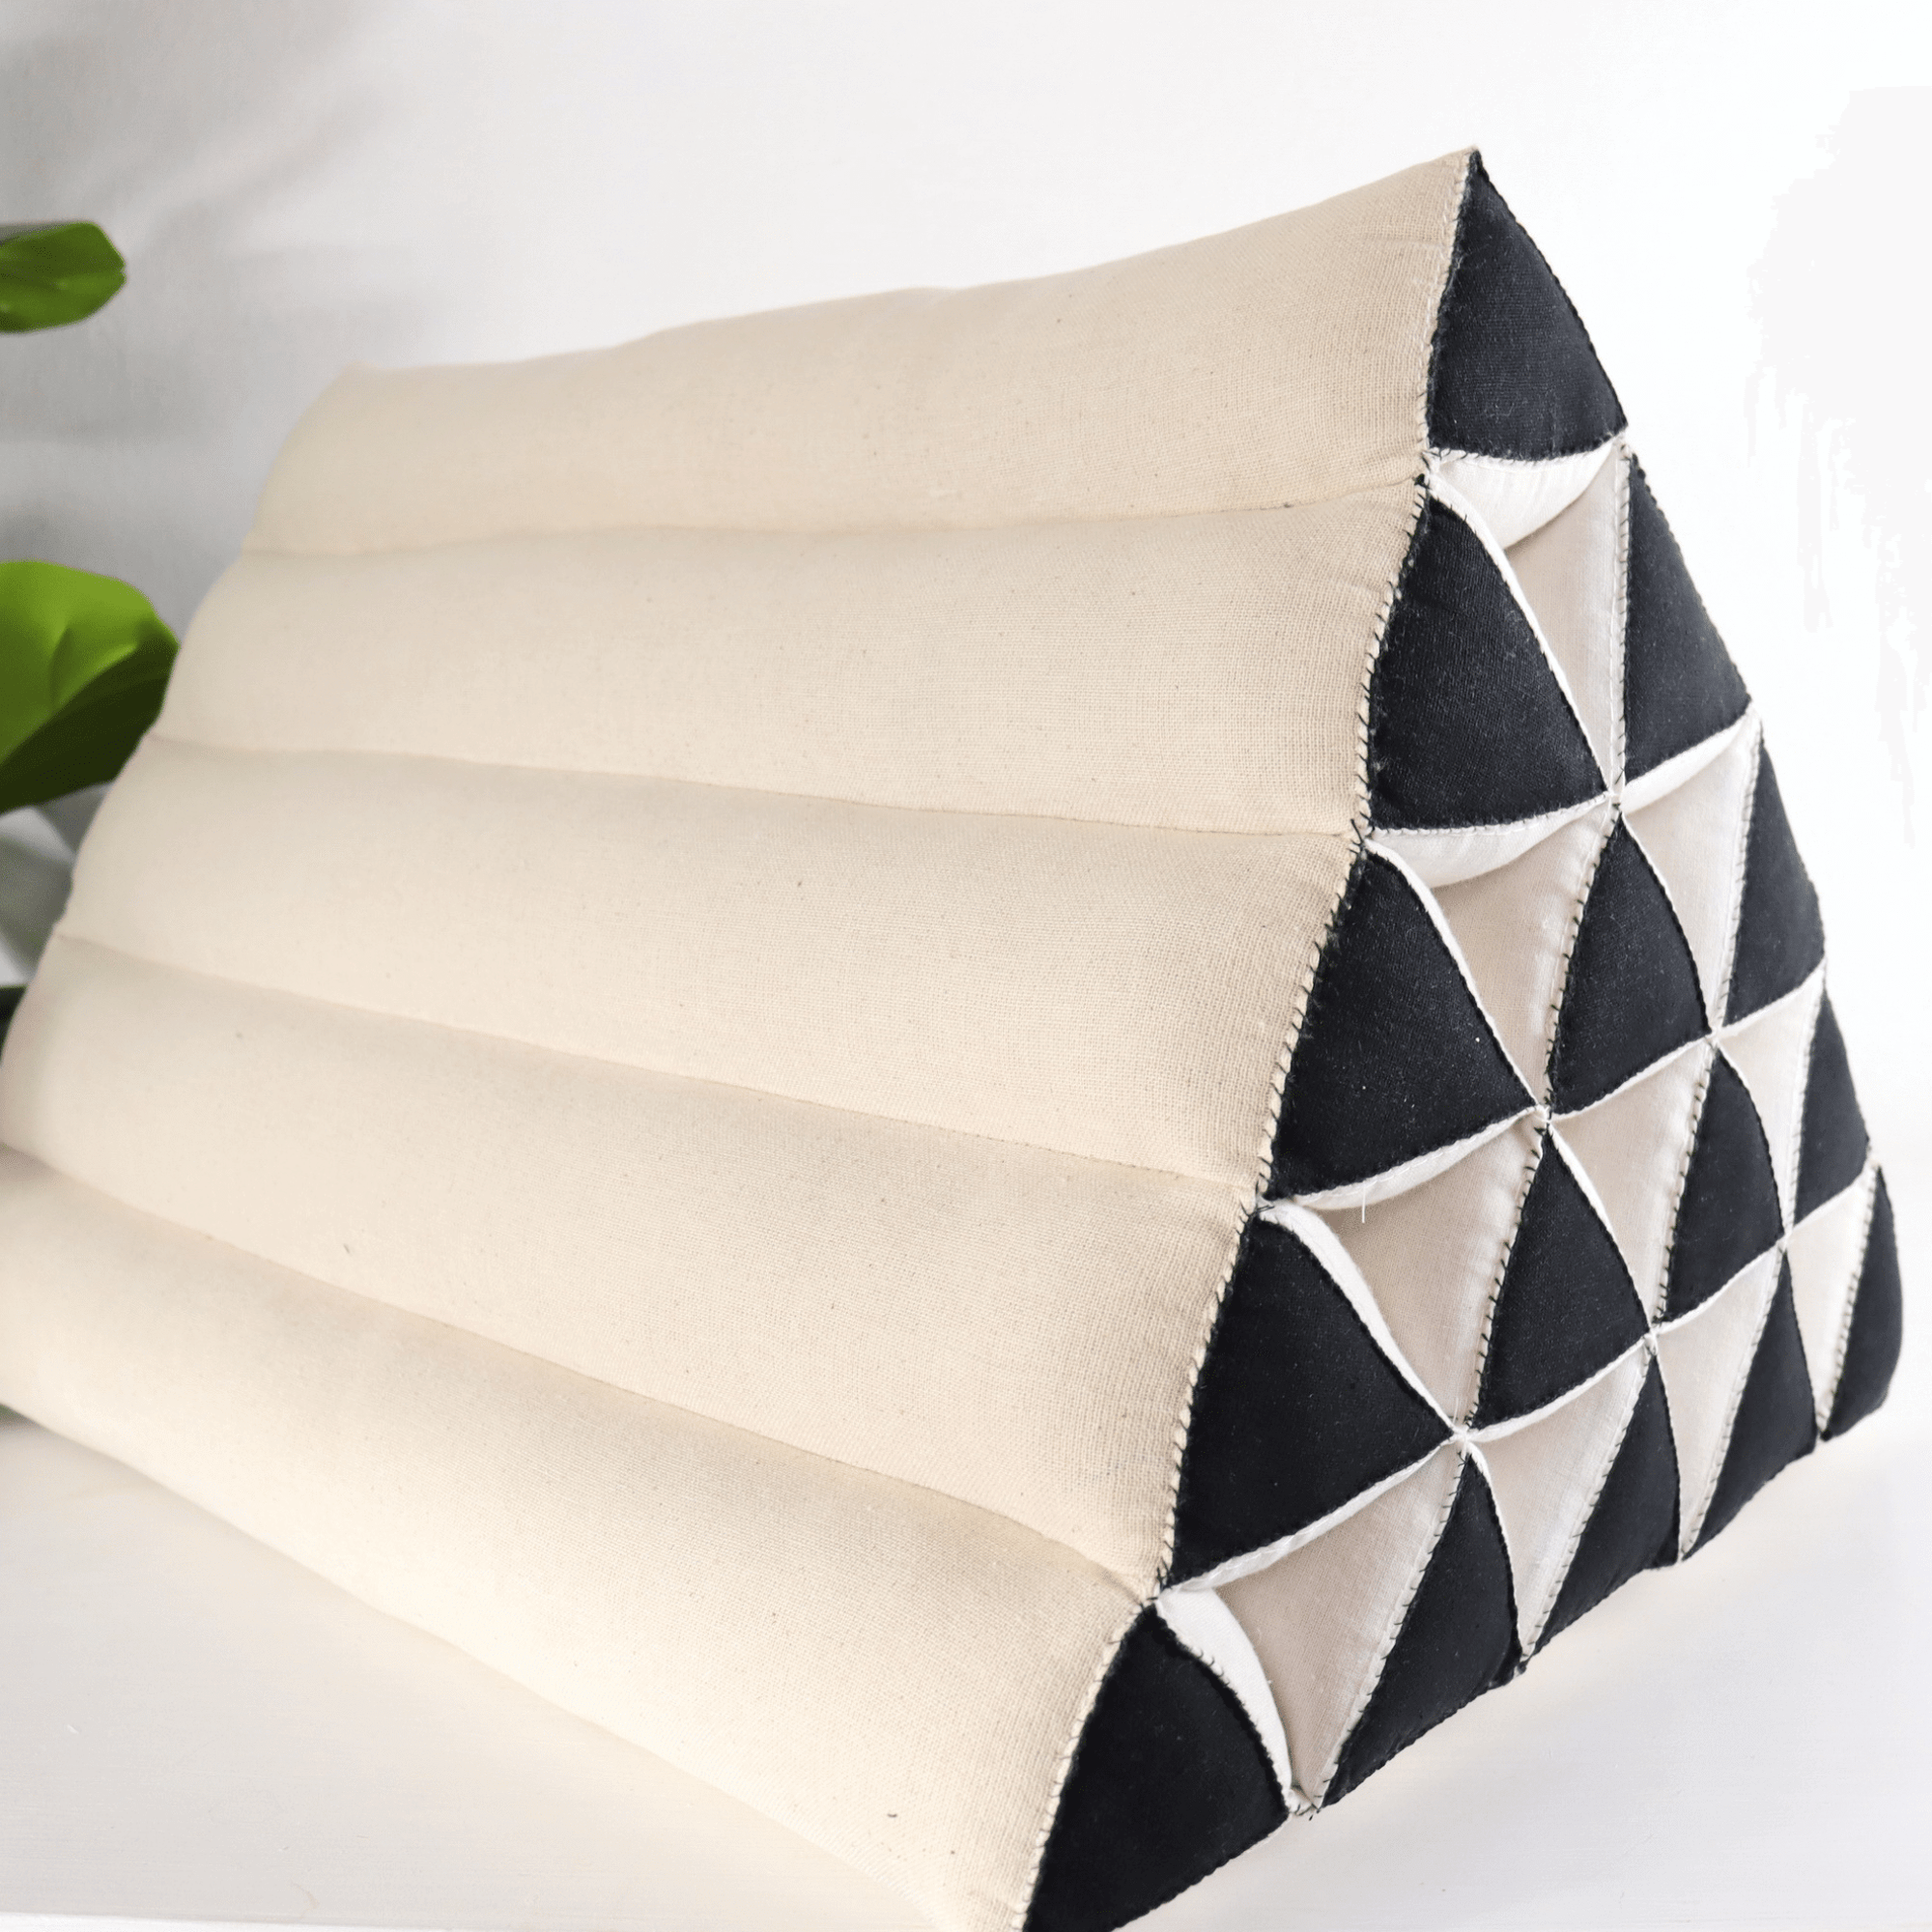 KA MON CHAN - Thai Triangle Cushion (White and Black)